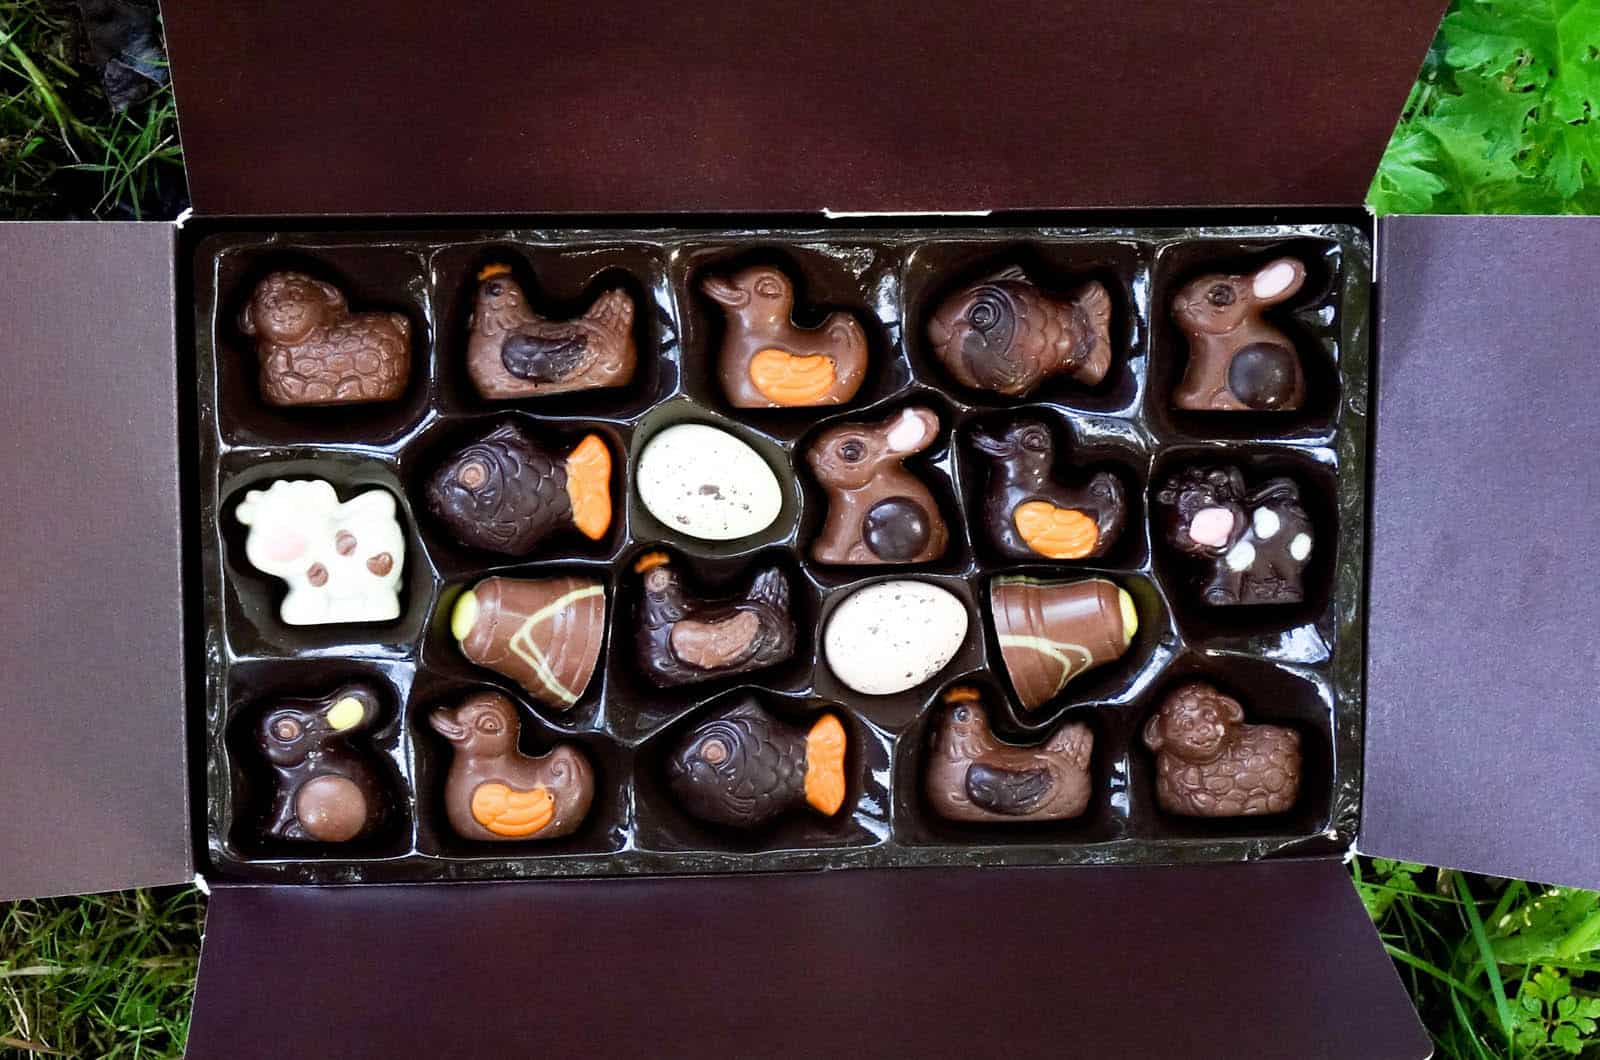 Prix Boite De Chocolat Jeff De Bruges EatYourBox et Jeff de Bruges édition spéciale - Toutes les Box